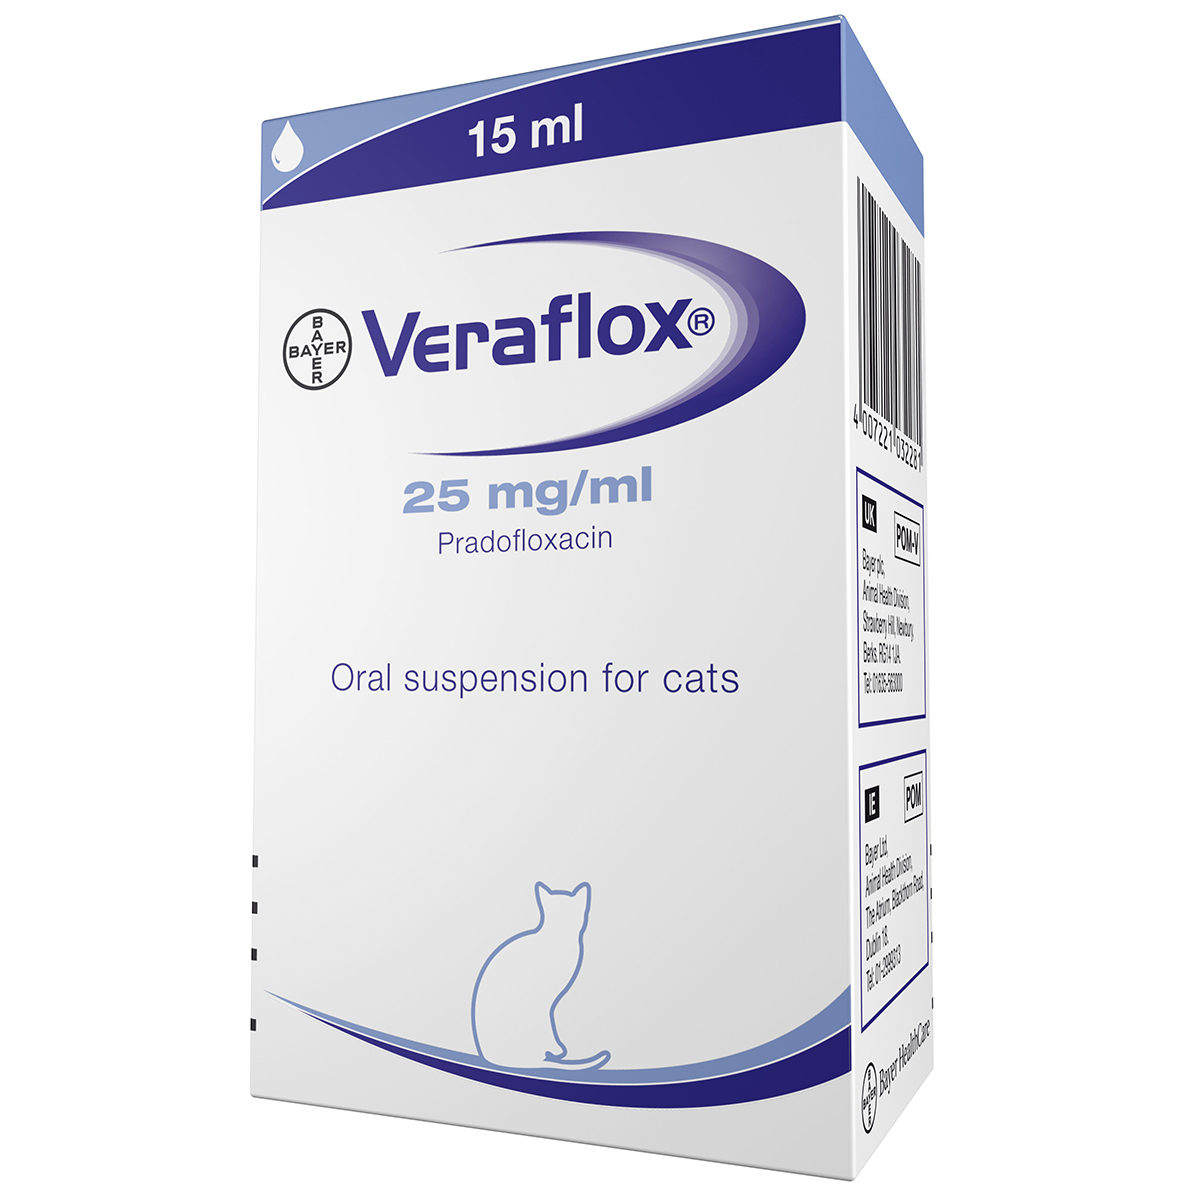 Veraflox suspensie orala pisici 15 ml imagine